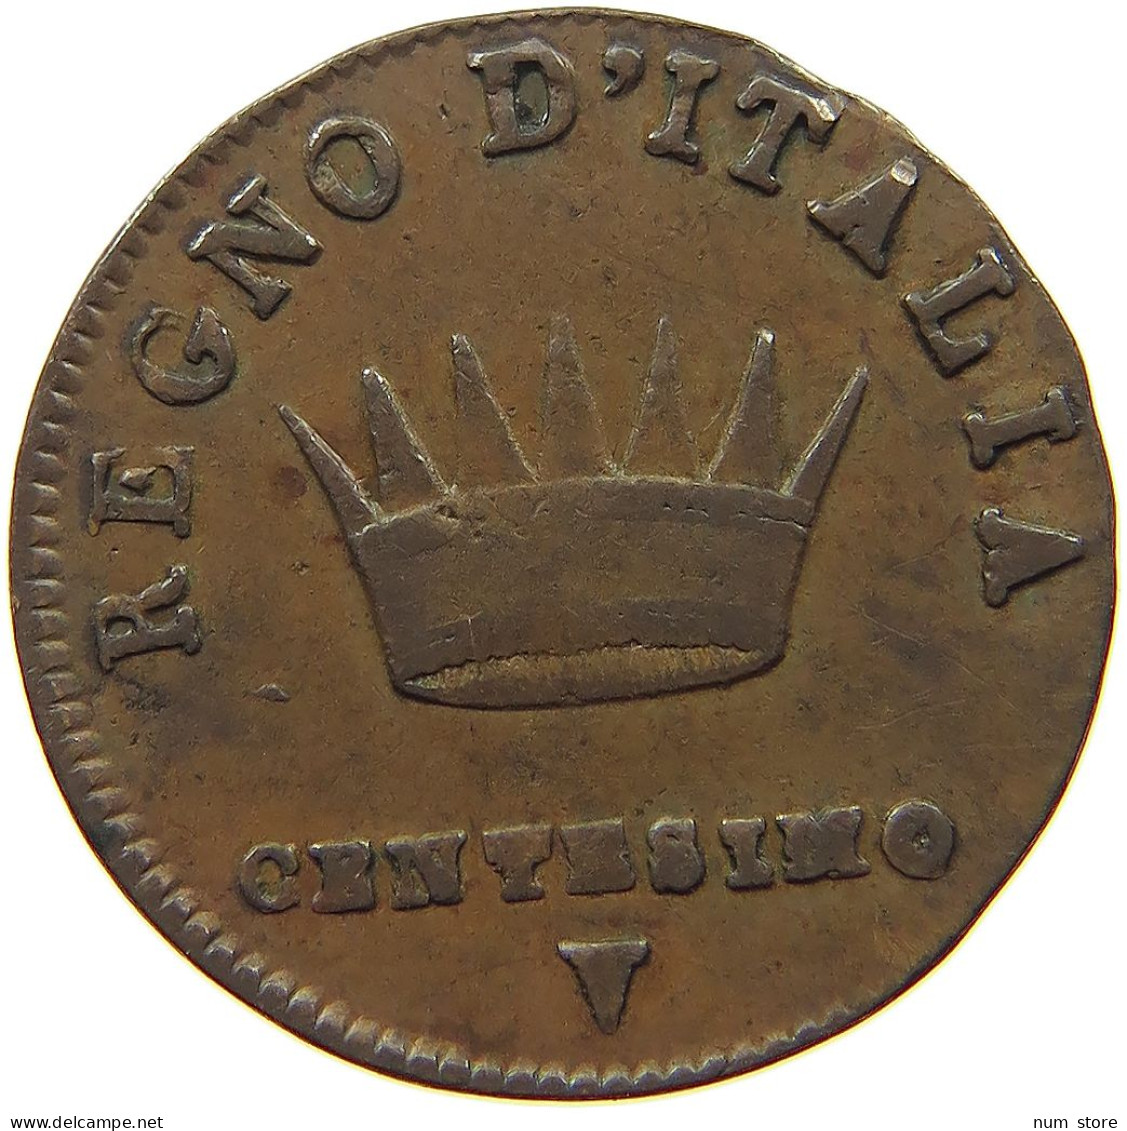 ITALY STATES NAPOLEON I. CENTESIMO 1808 V Napoleon I. (1804-1814, 1815) #t146 0351 - Napoleonic